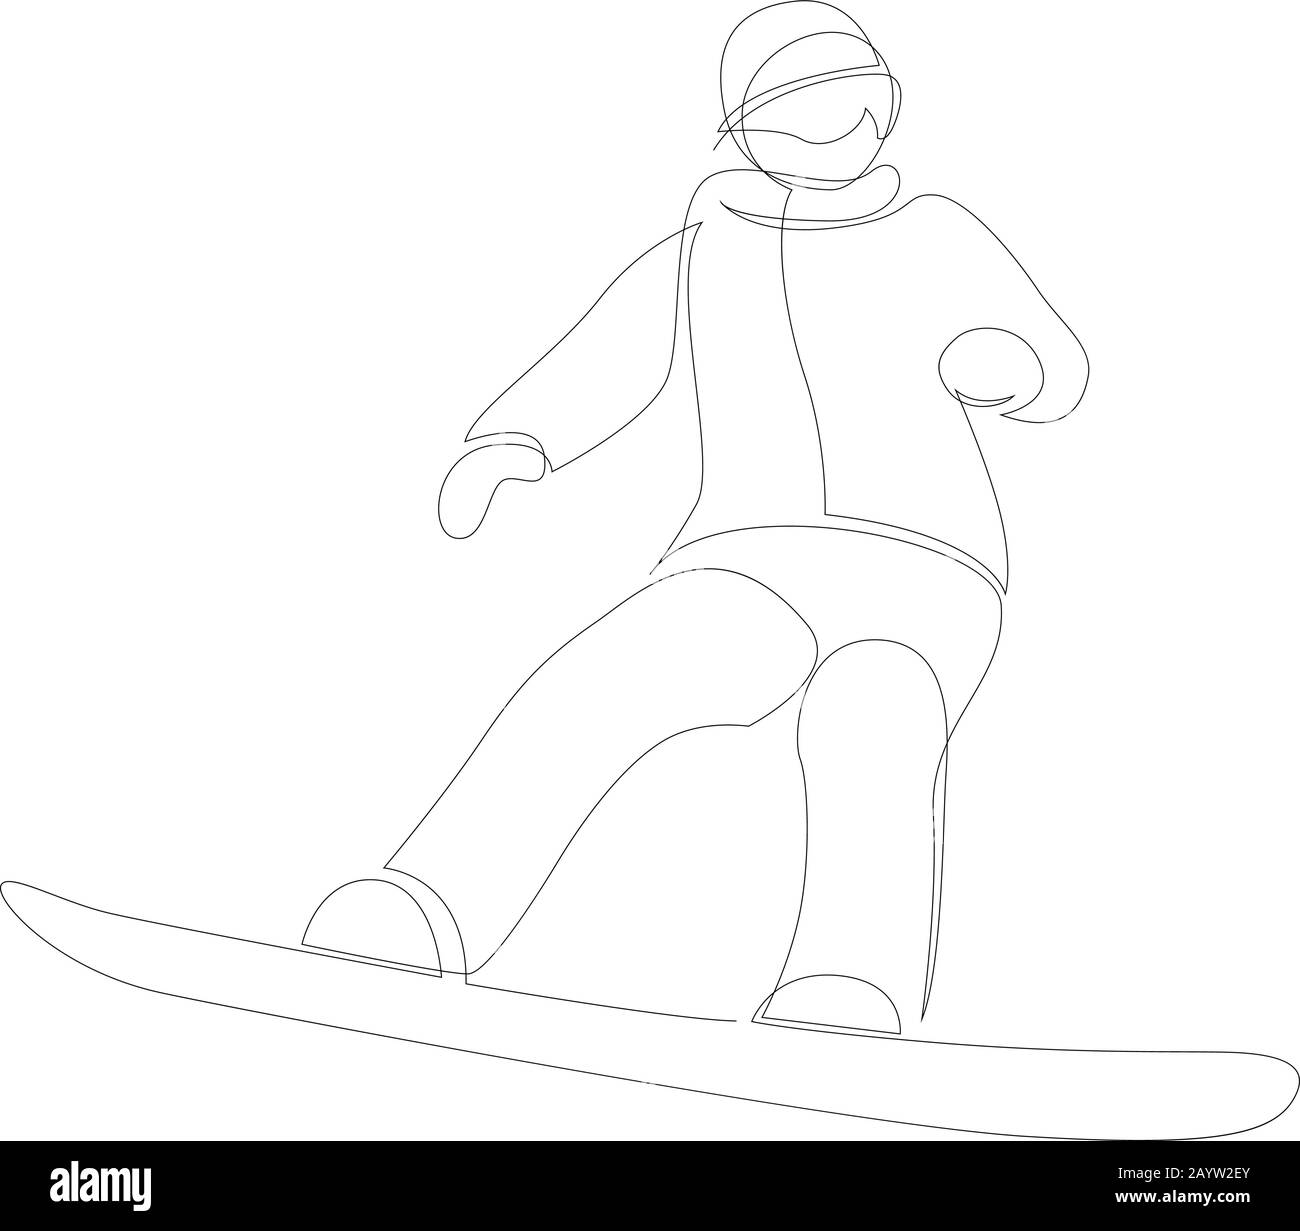 Dessin continu d'une ligne de sport d'hiver de snowboard. Un homme sur le snowboard freestyle. Design minimaliste vectoriel. Illustration de Vecteur